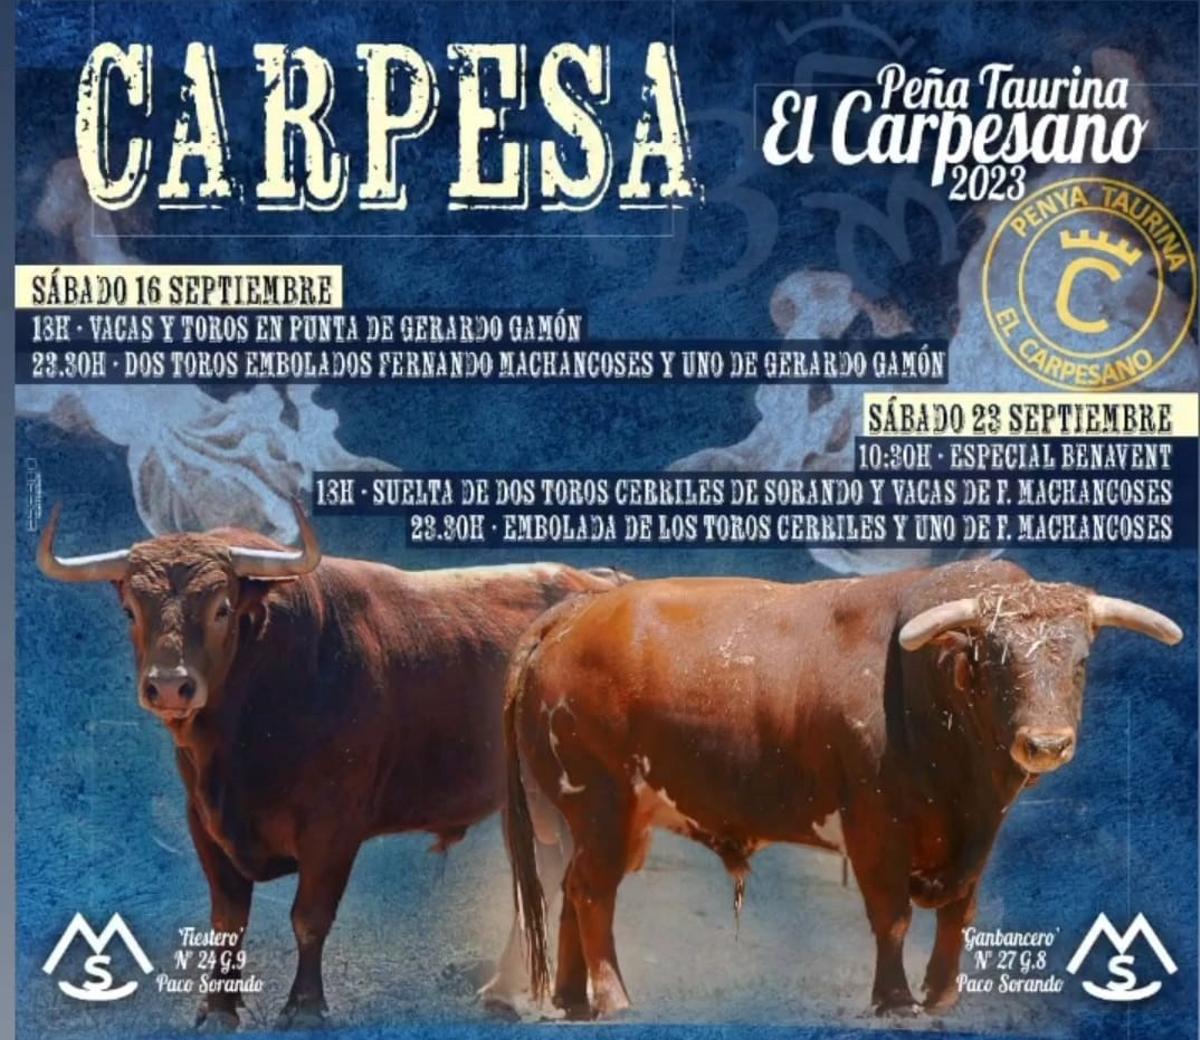 Cartel de los festejos taurinos de Carpesa donde se anuncian los toros embolados.